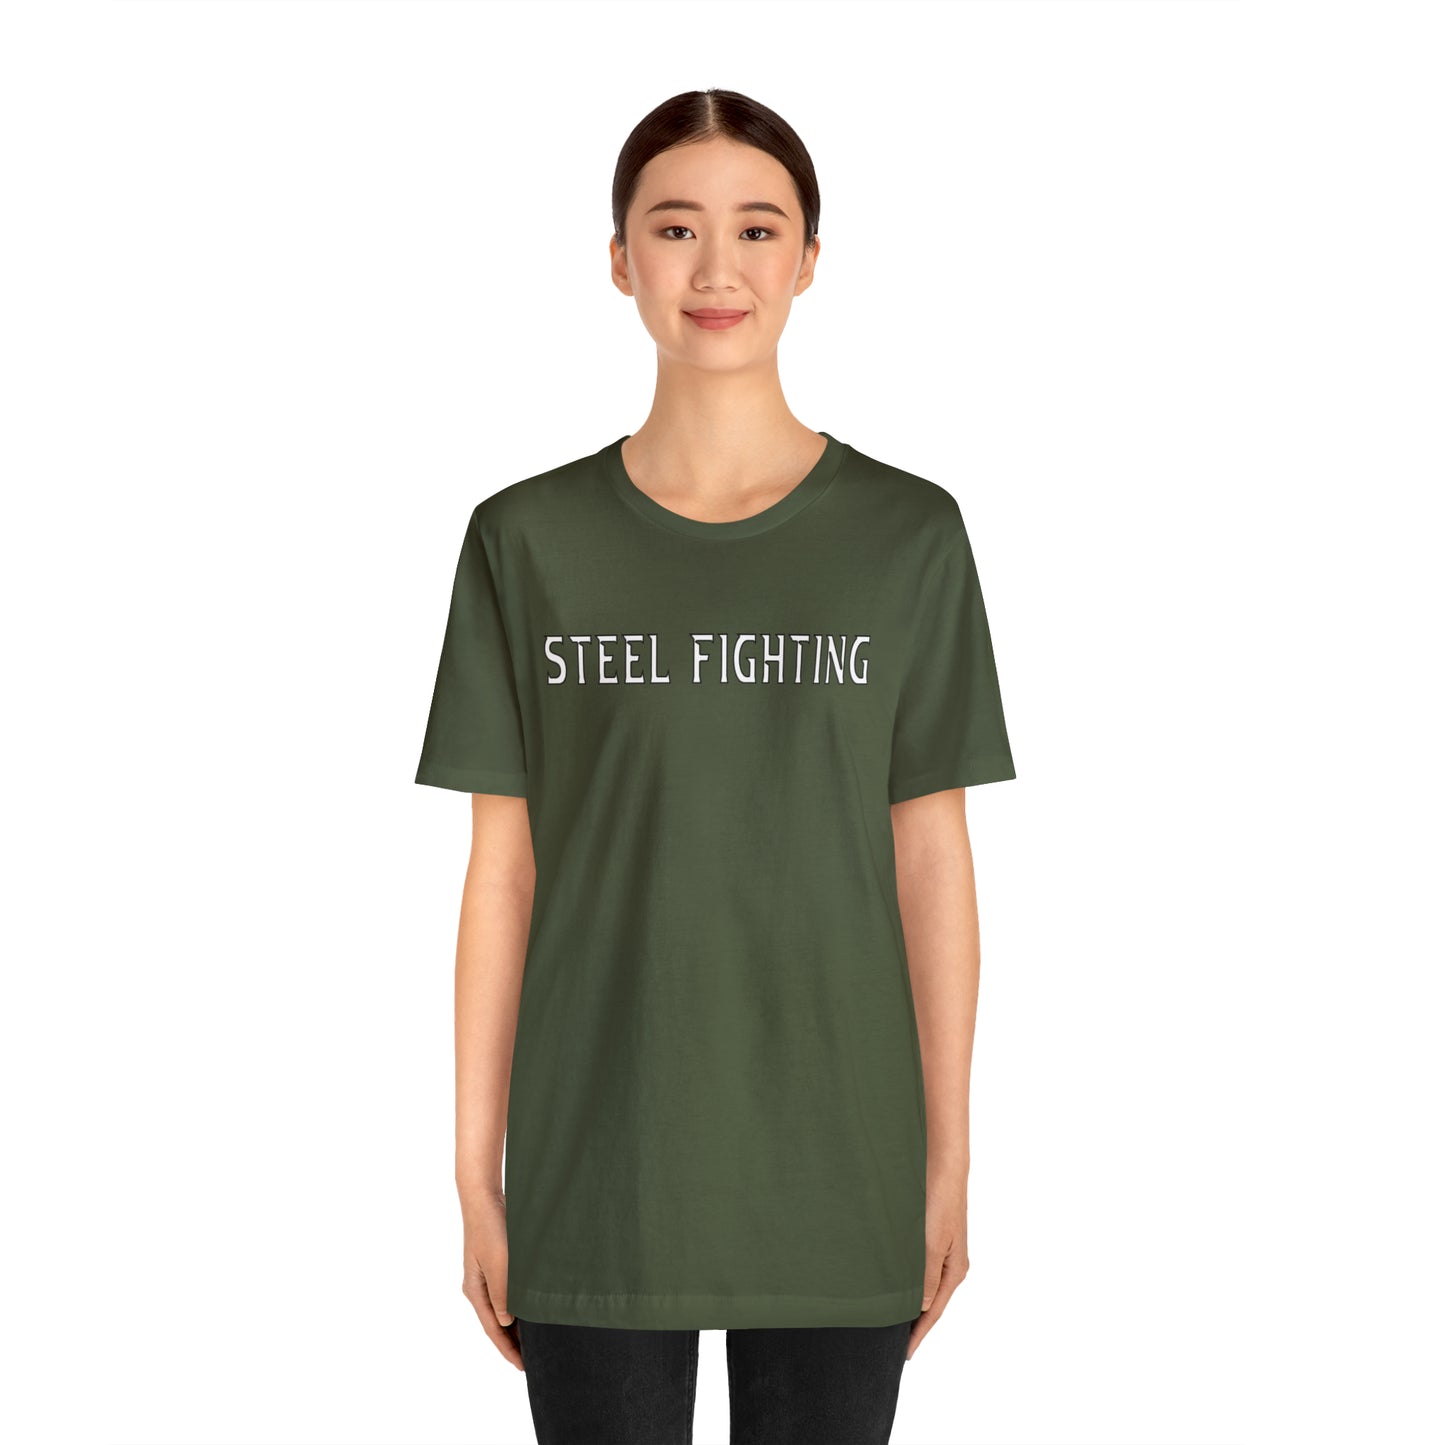 Veterans of Steel "STEEL FIGHTING" TEESHIRT